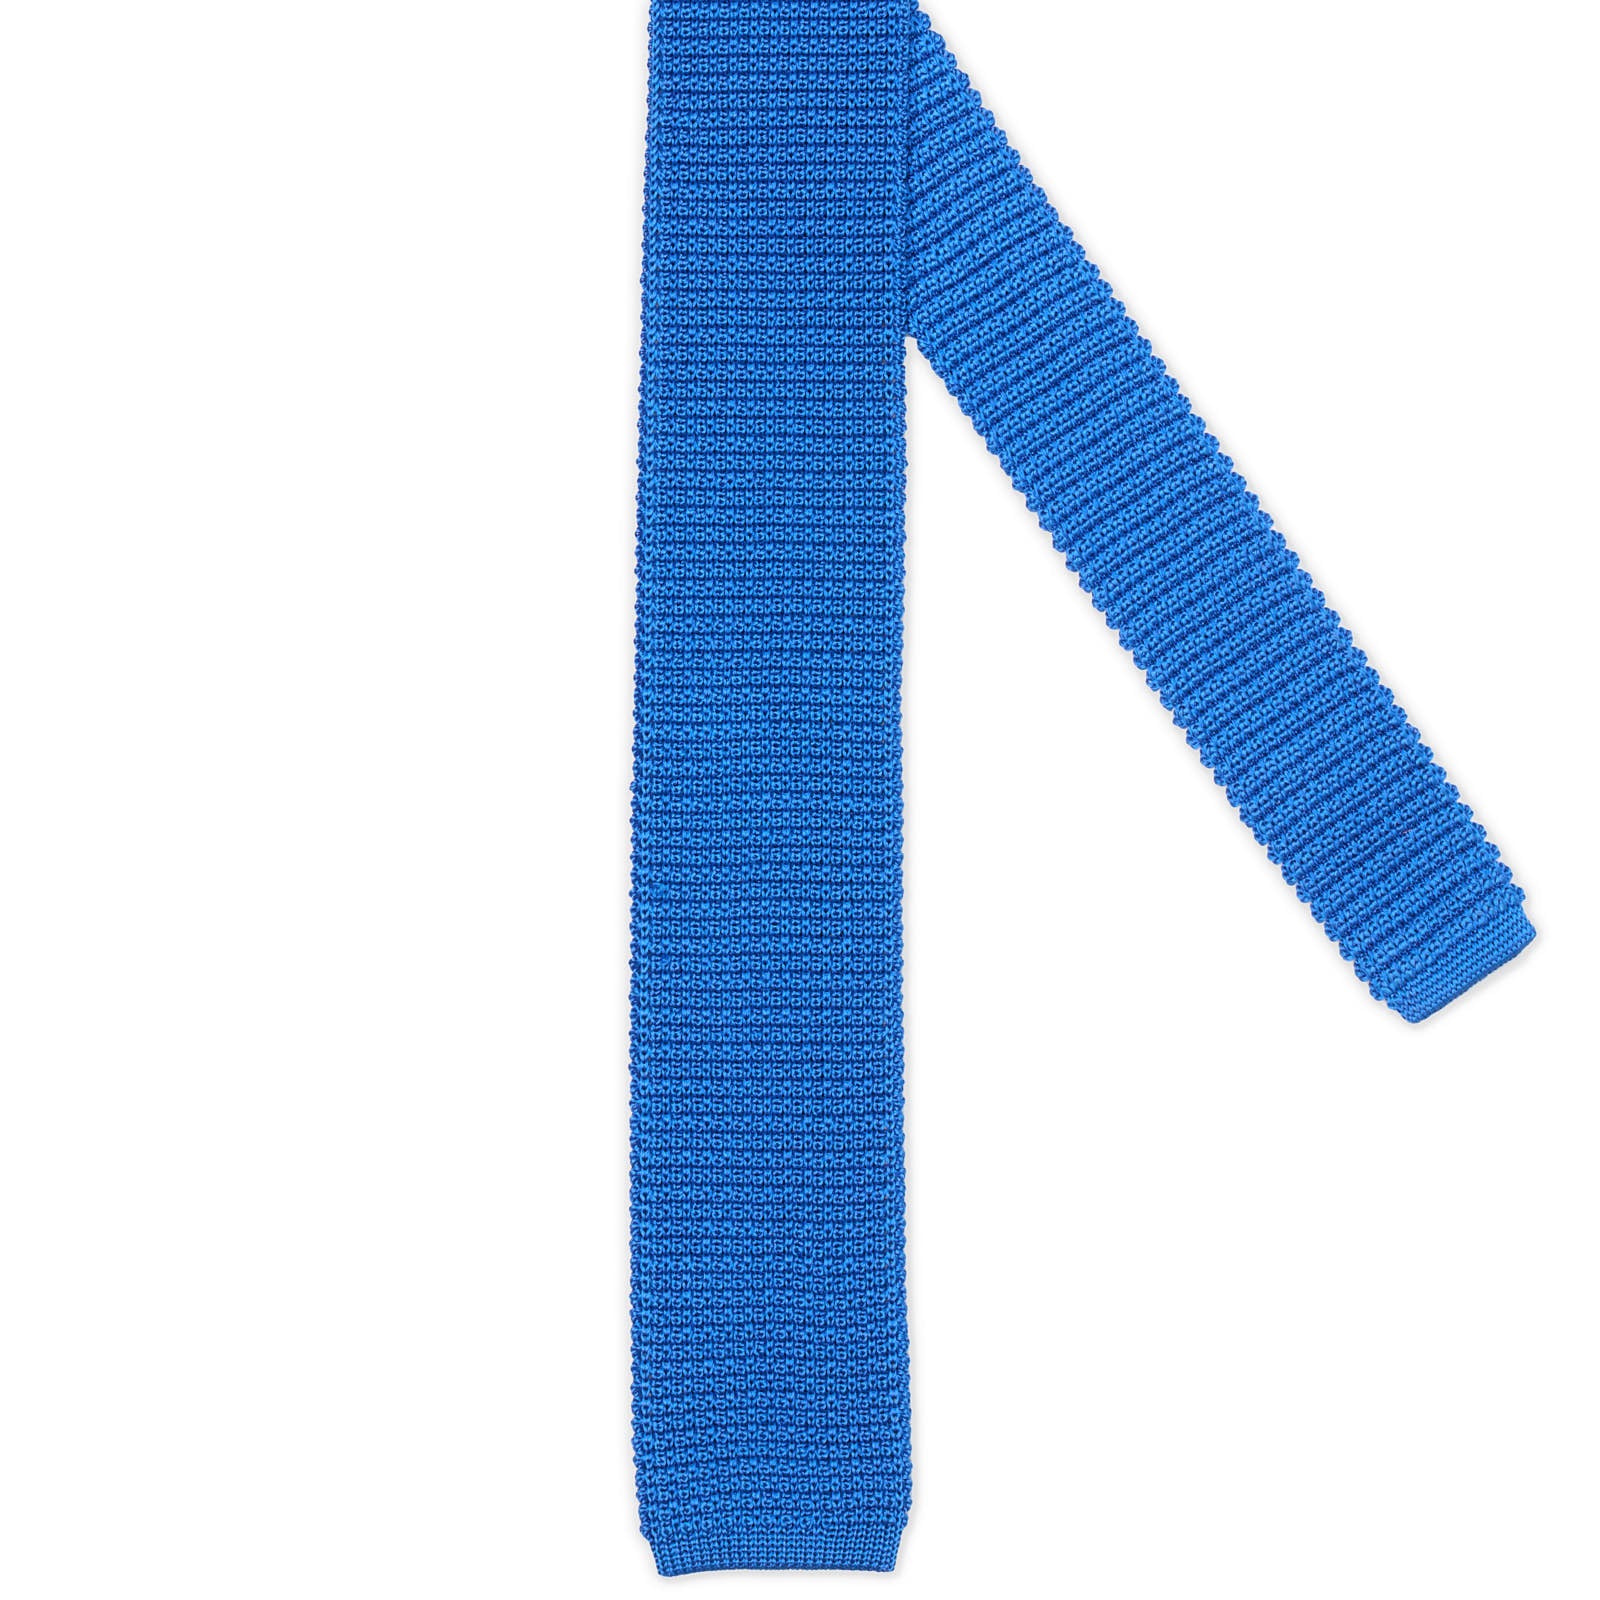 MATTABISCH FOR VANNUCCI Blue Silk Knit Tie NEW